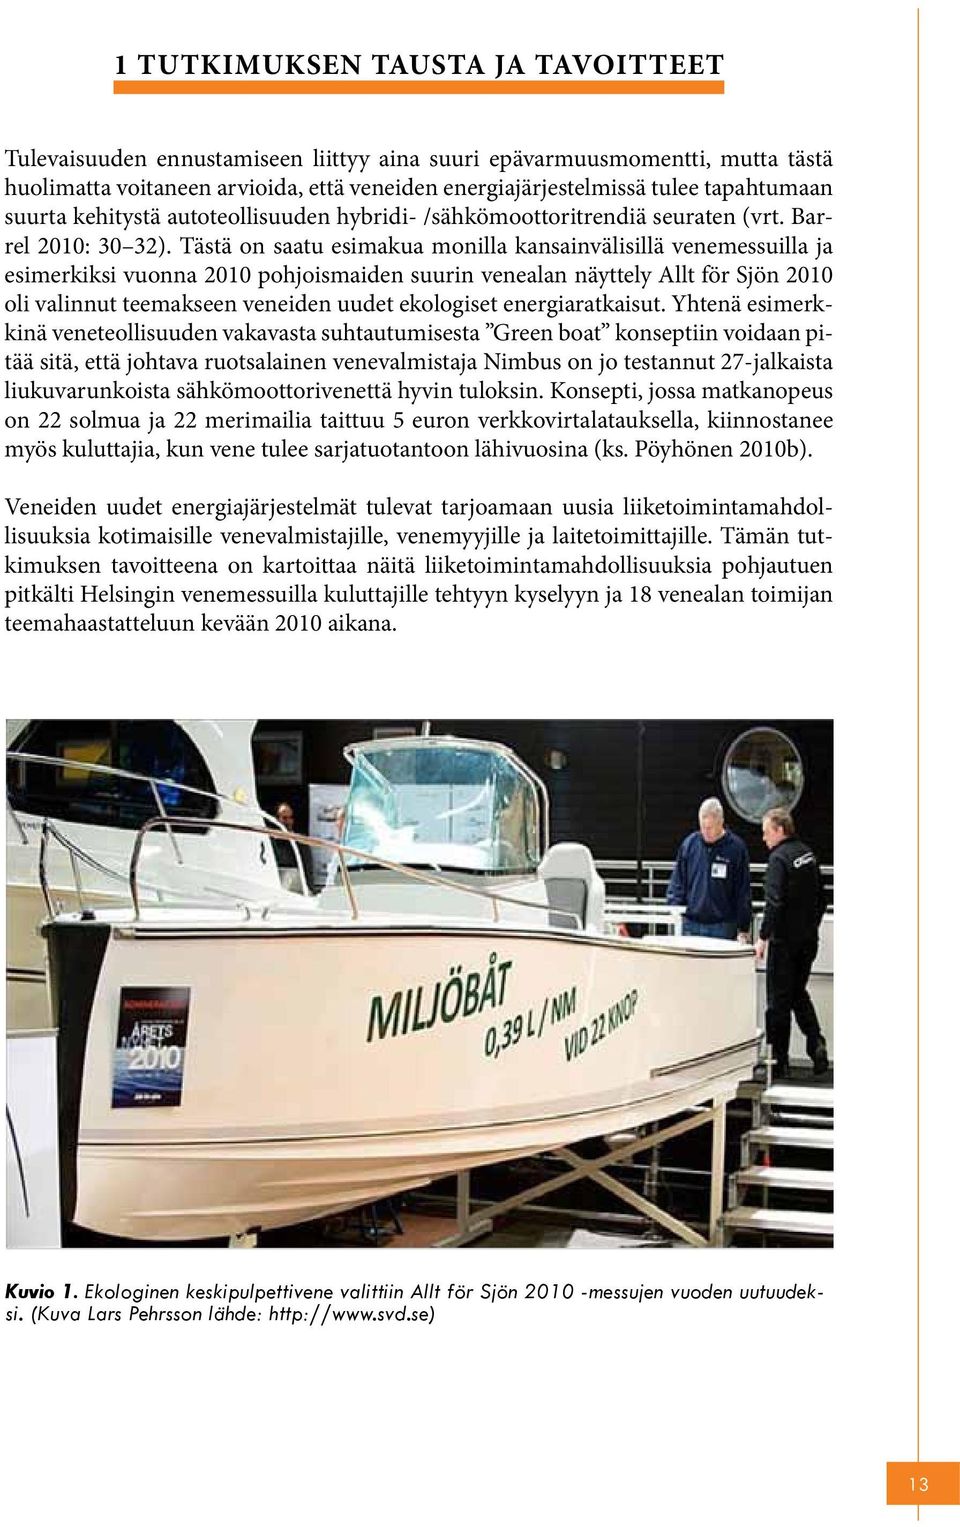 Tästä on saatu esimakua monilla kansainvälisillä venemessuilla ja esimerkiksi vuonna 2010 pohjoismaiden suurin venealan näyttely Allt för Sjön 2010 oli valinnut teemakseen veneiden uudet ekologiset